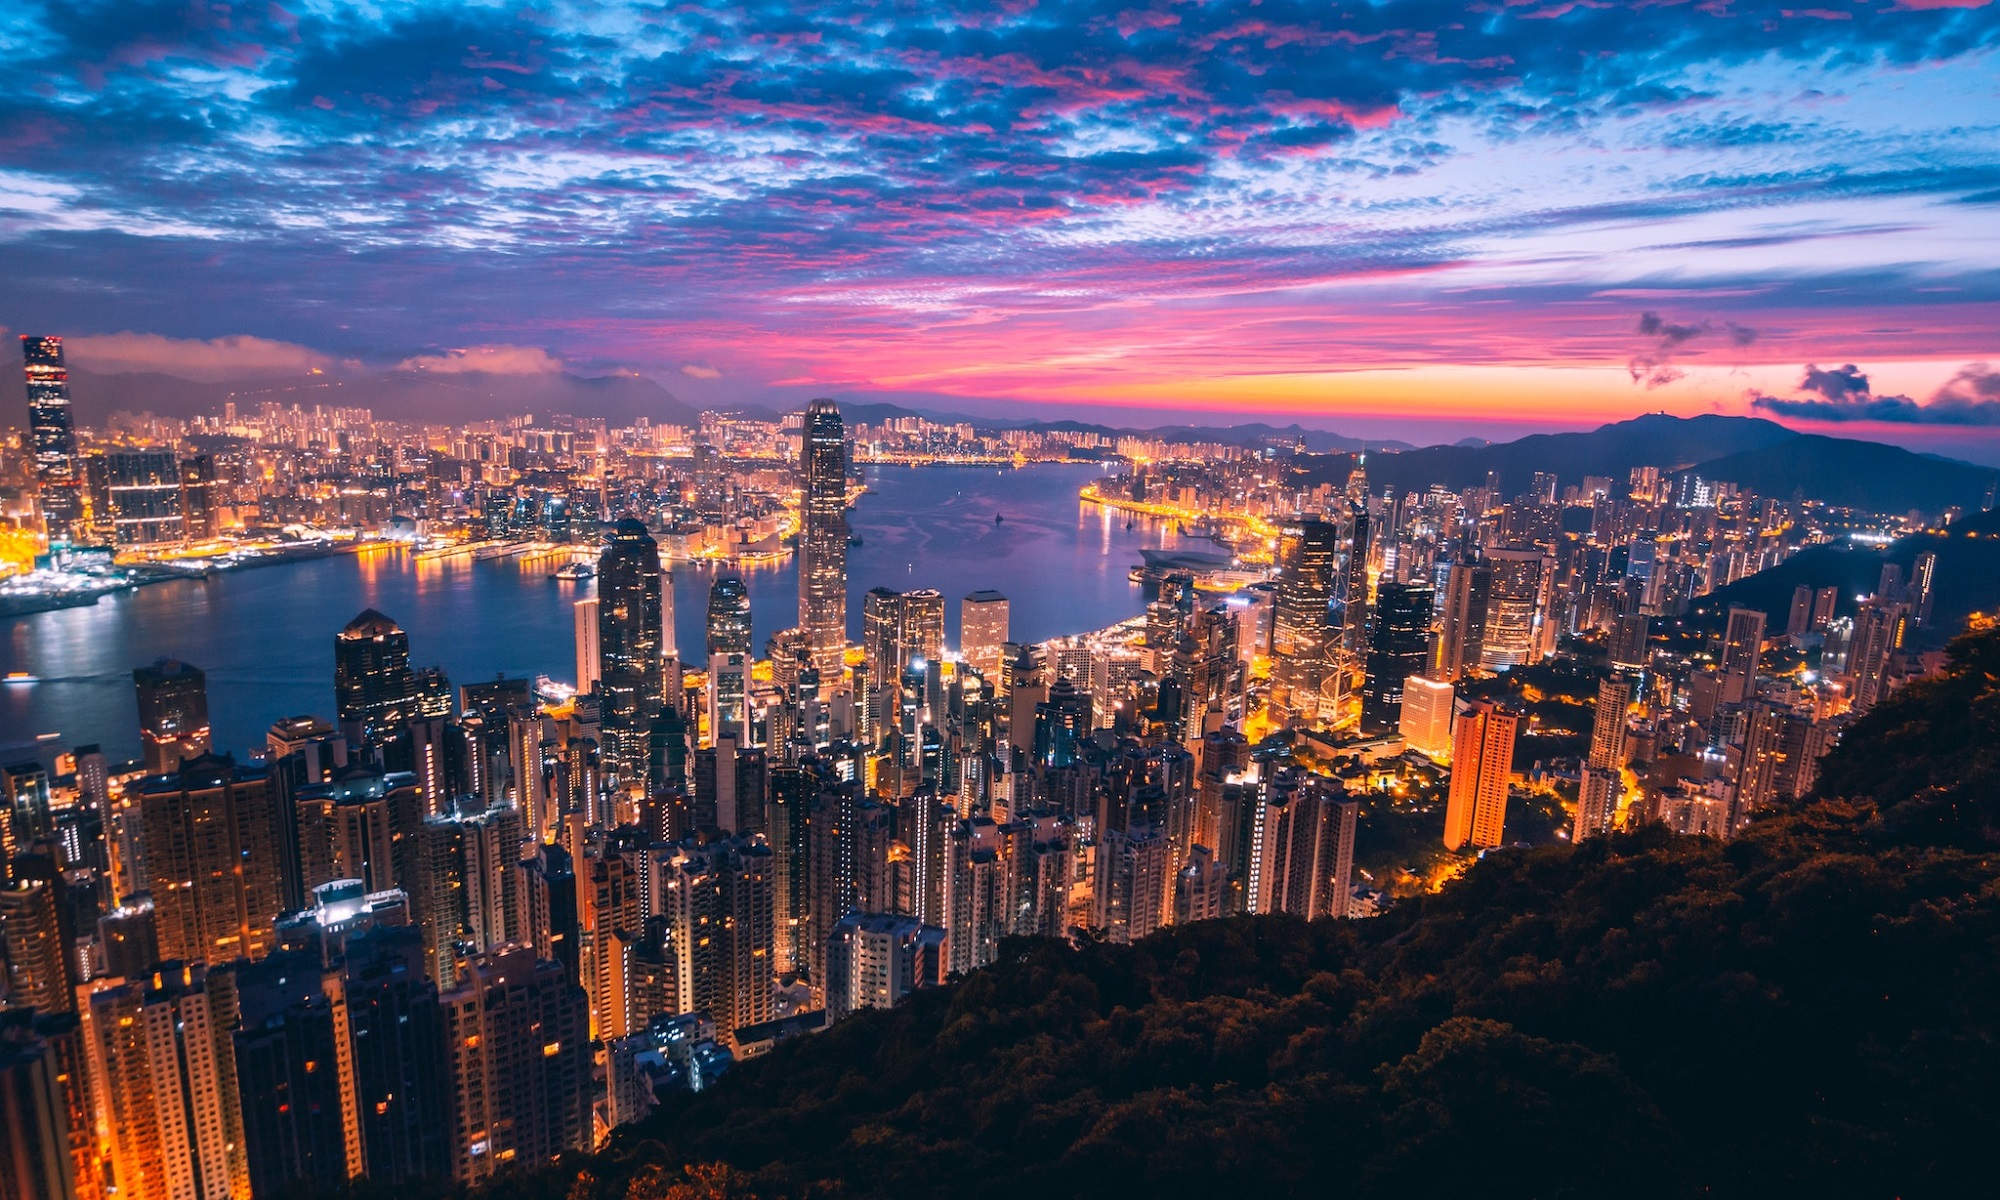 Finding a job in Hong Kong as an expat